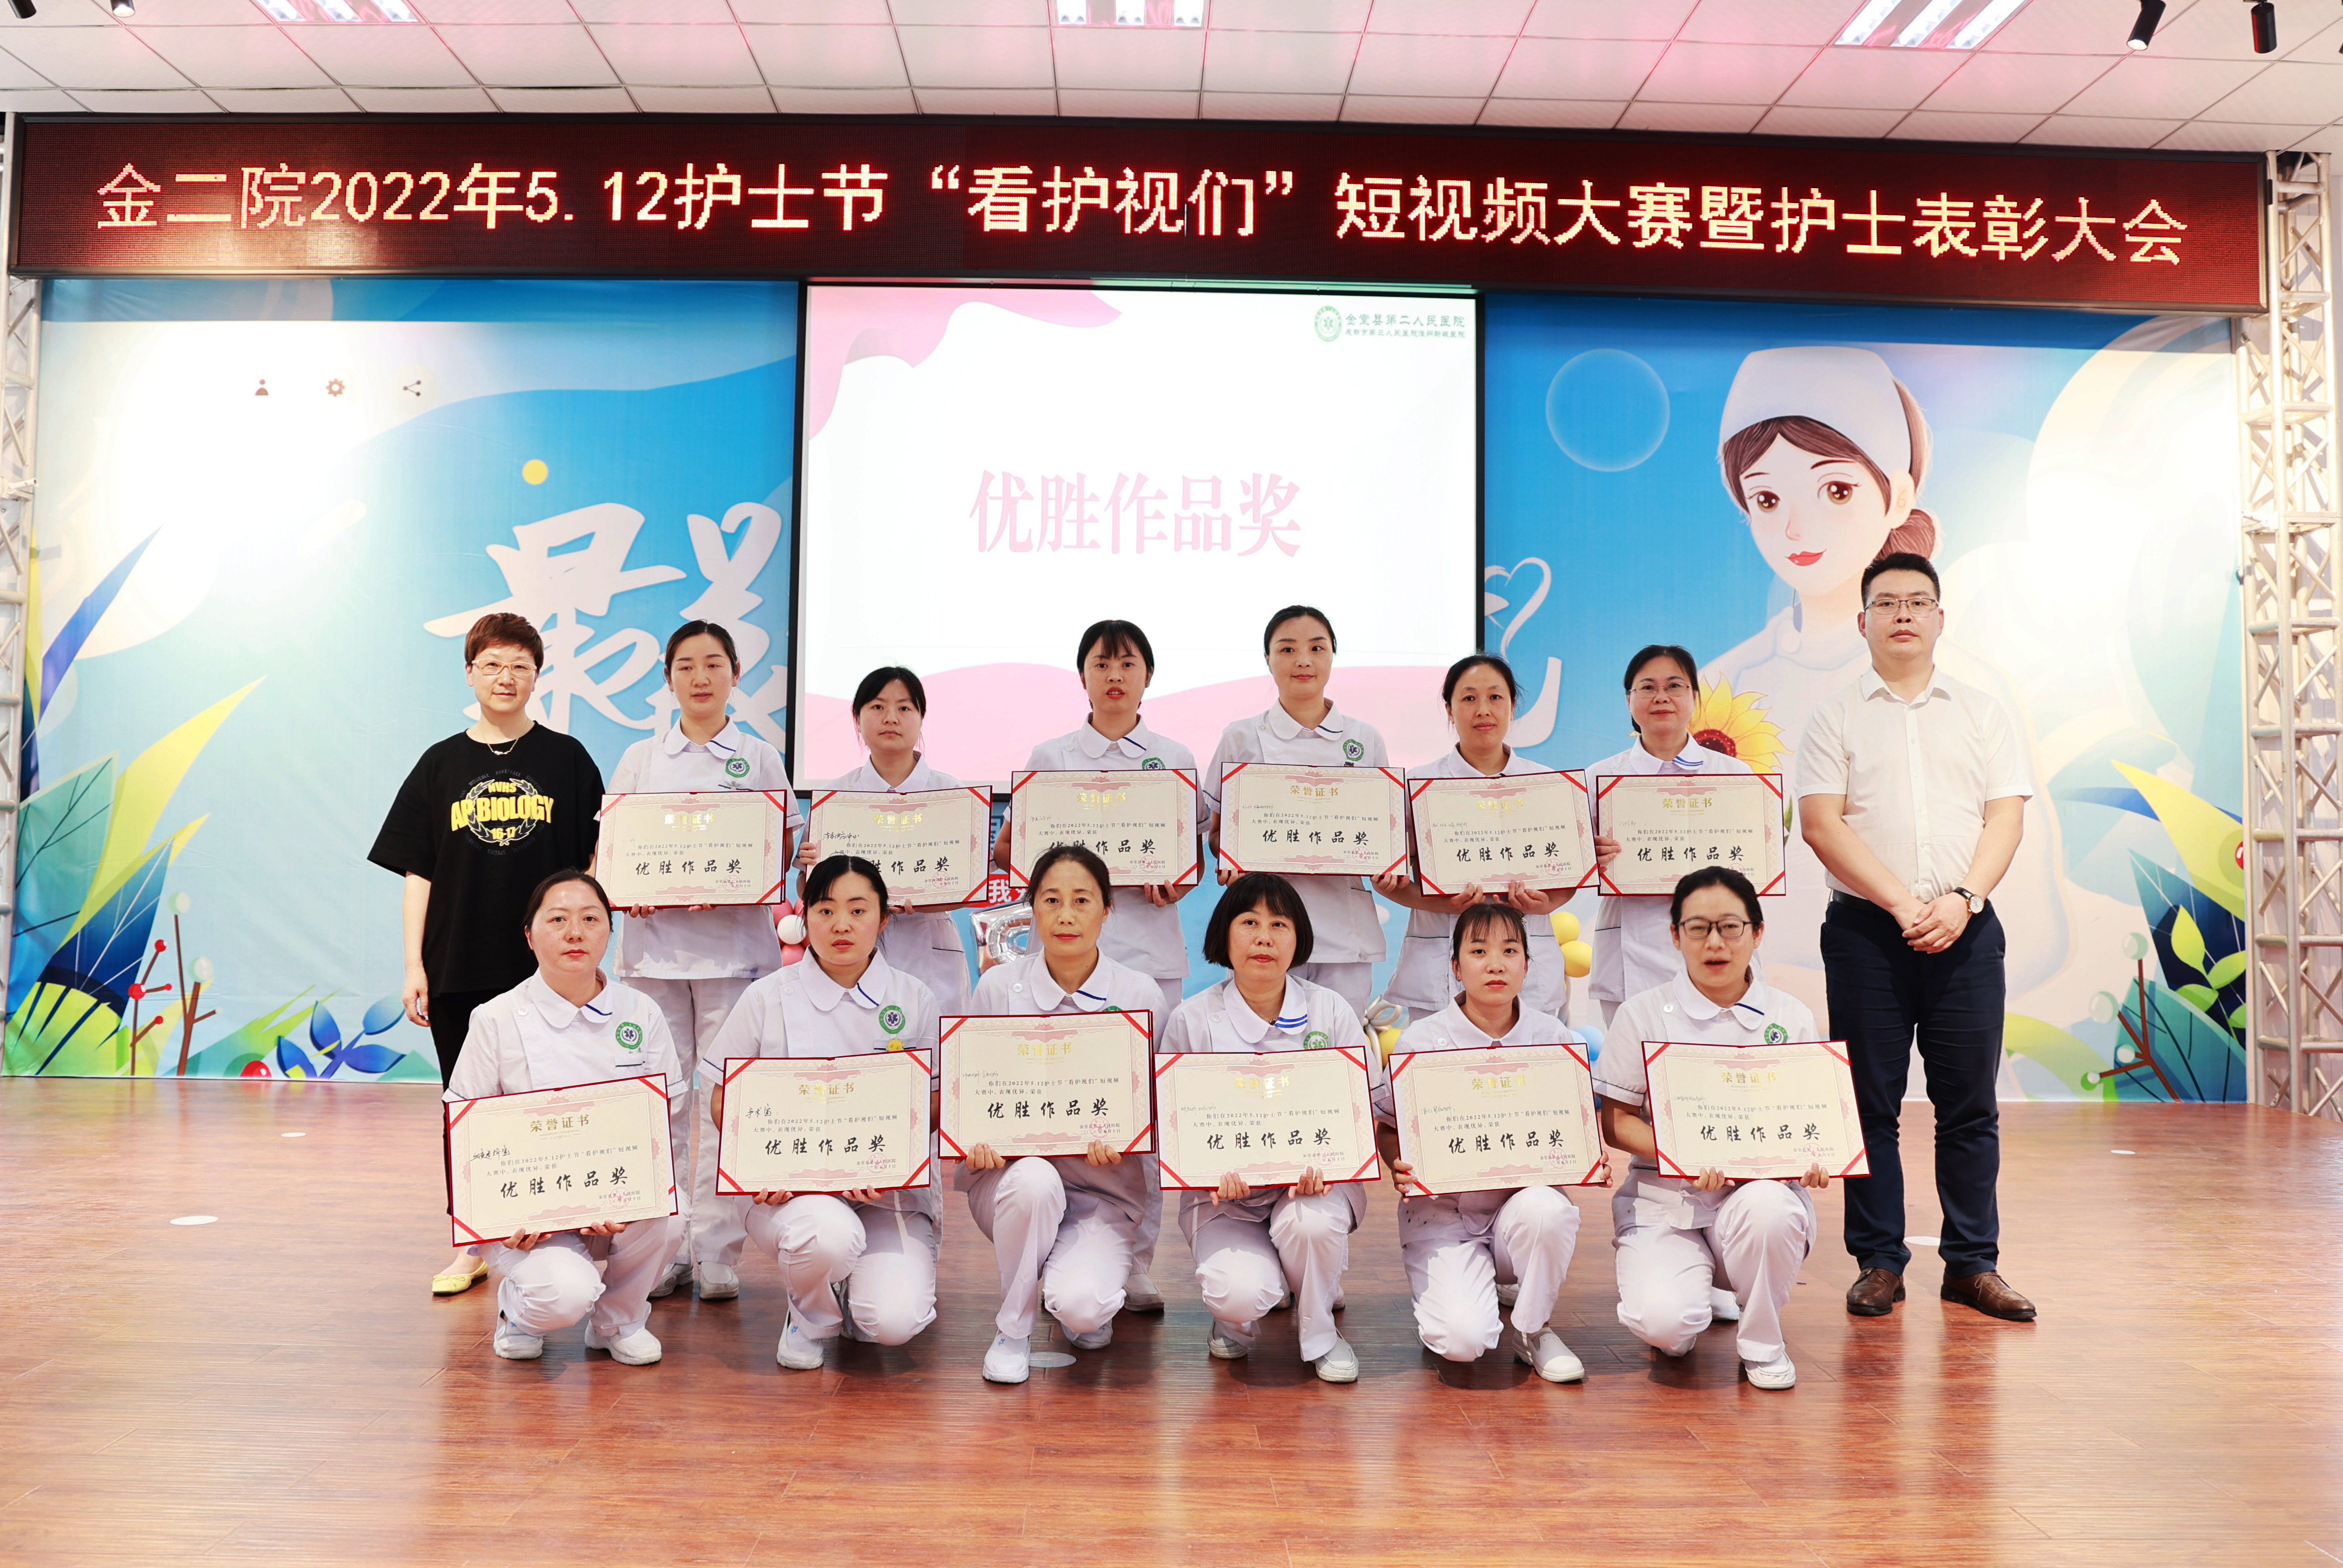 金堂二医院举办5.12国际护士节“看护视们”短视频大赛暨颁奖活动